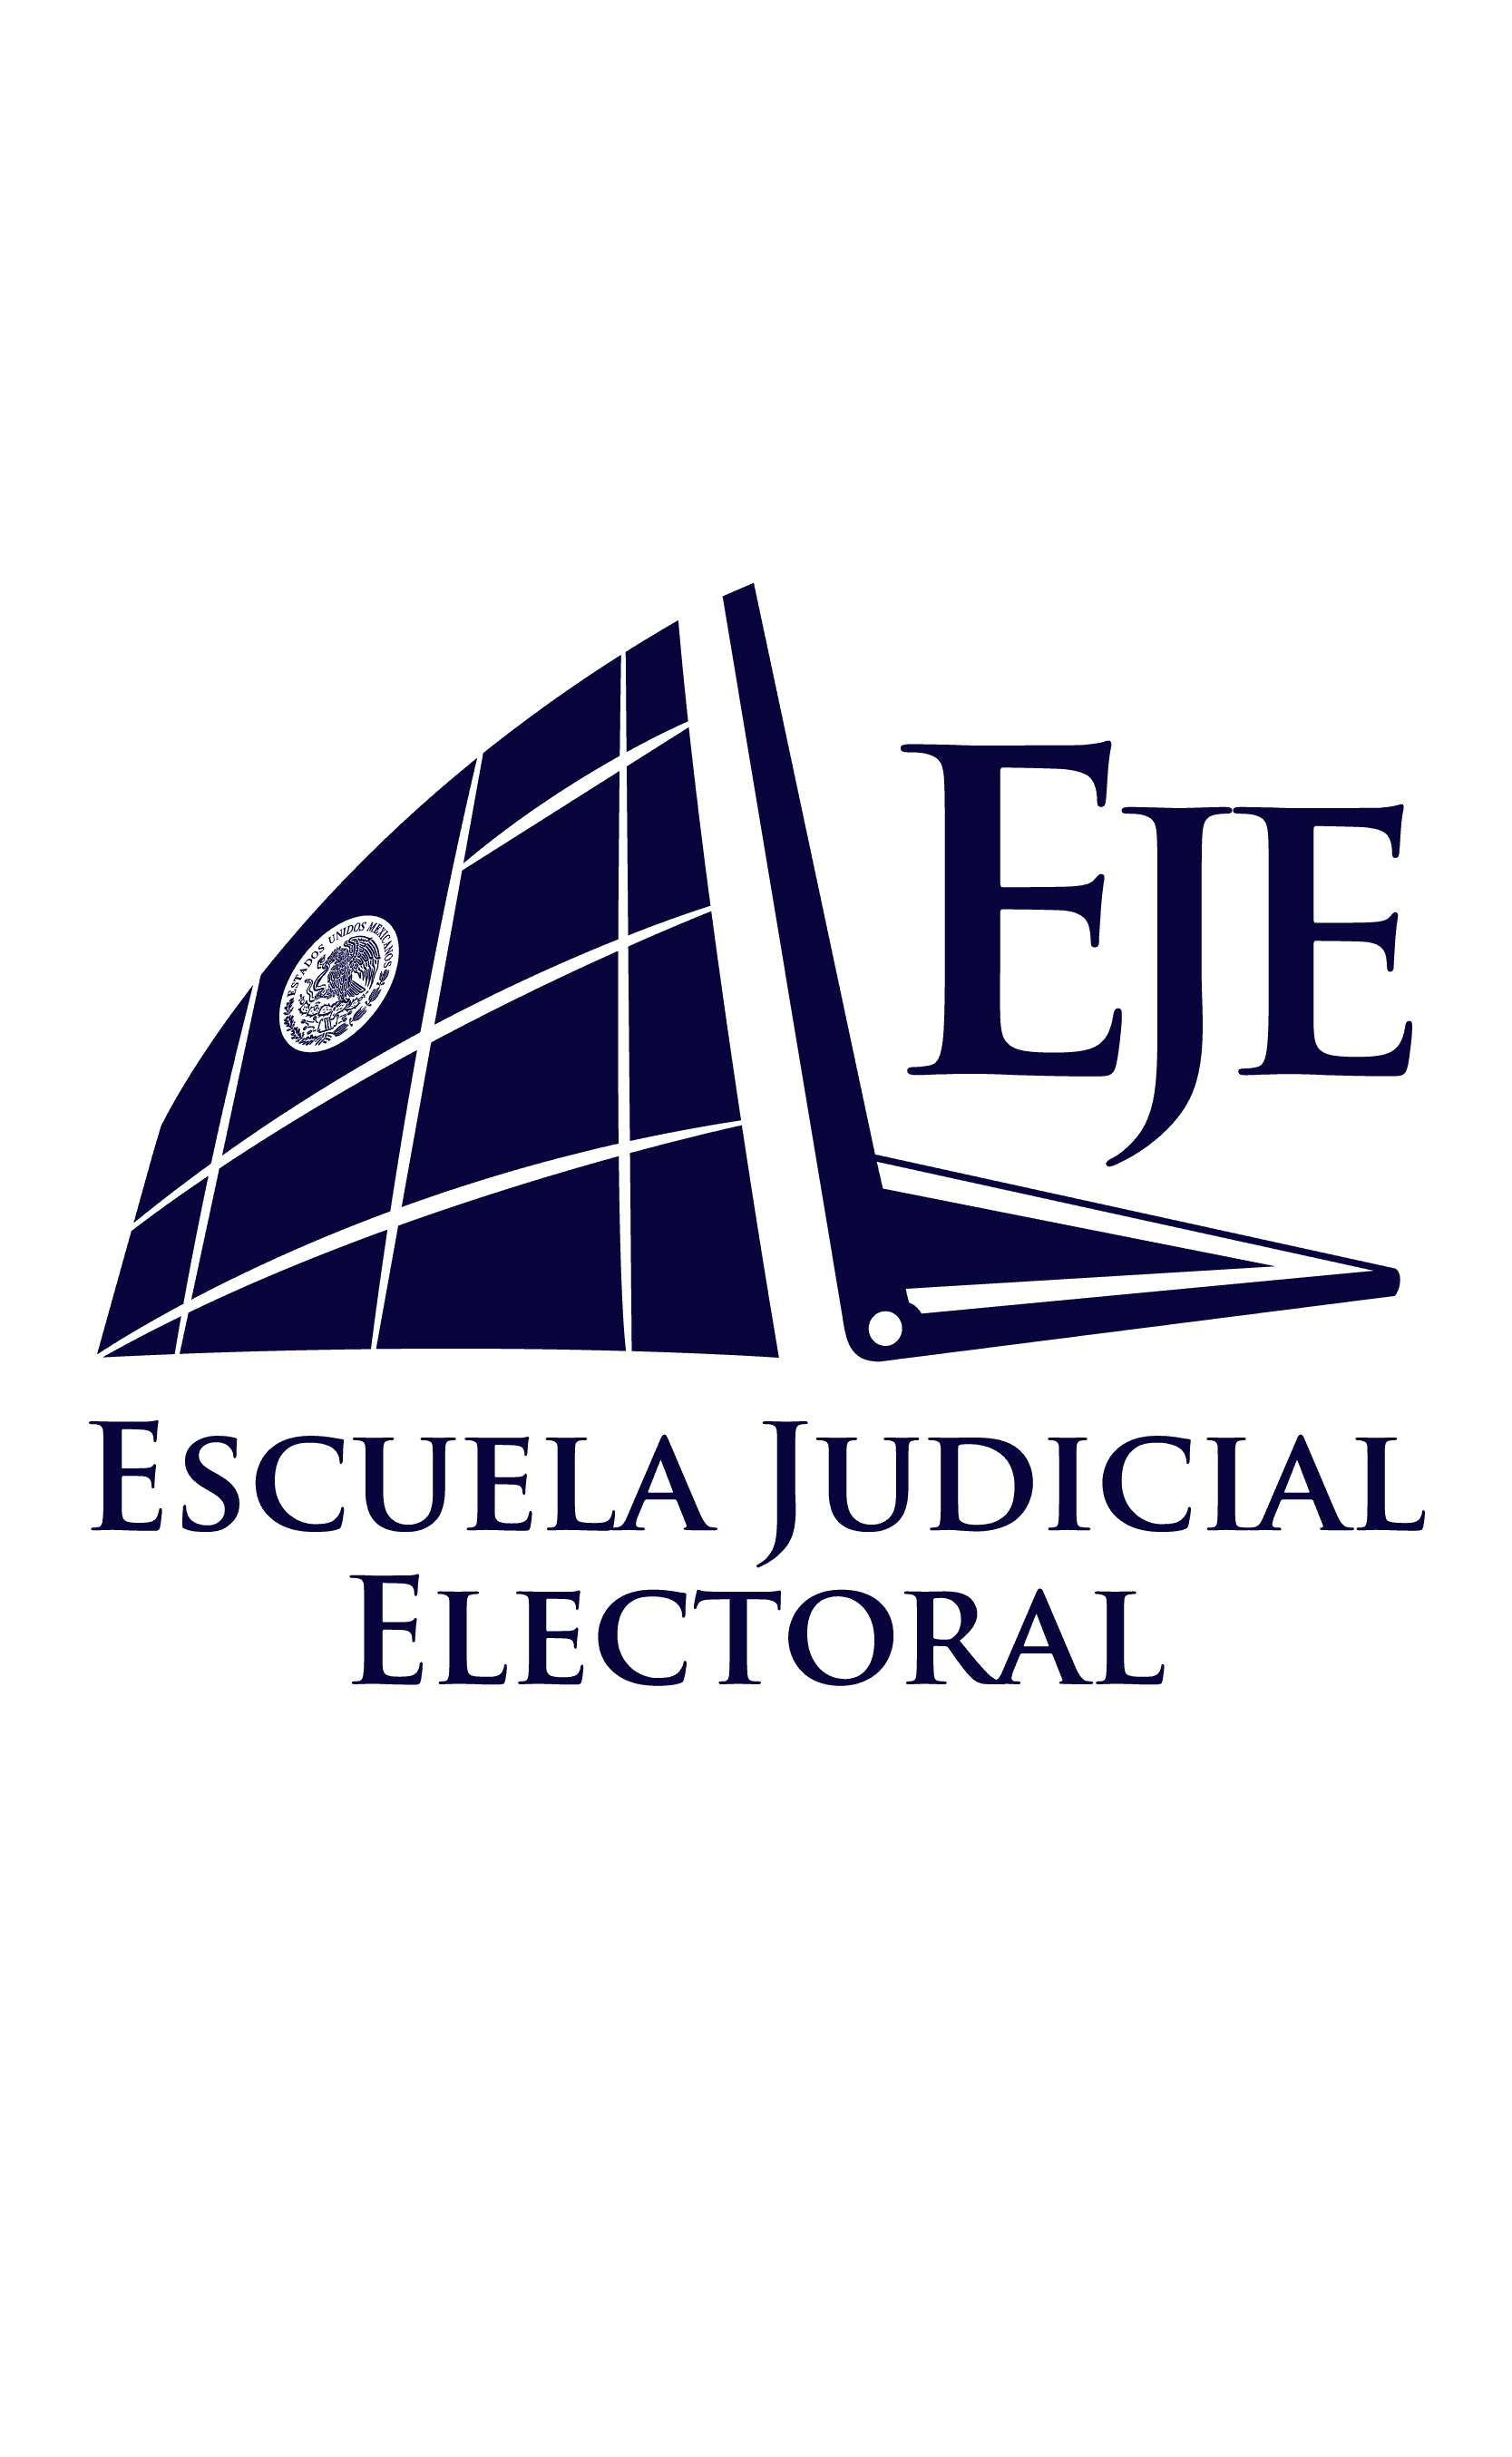 Image Escuela Judicial Electoral